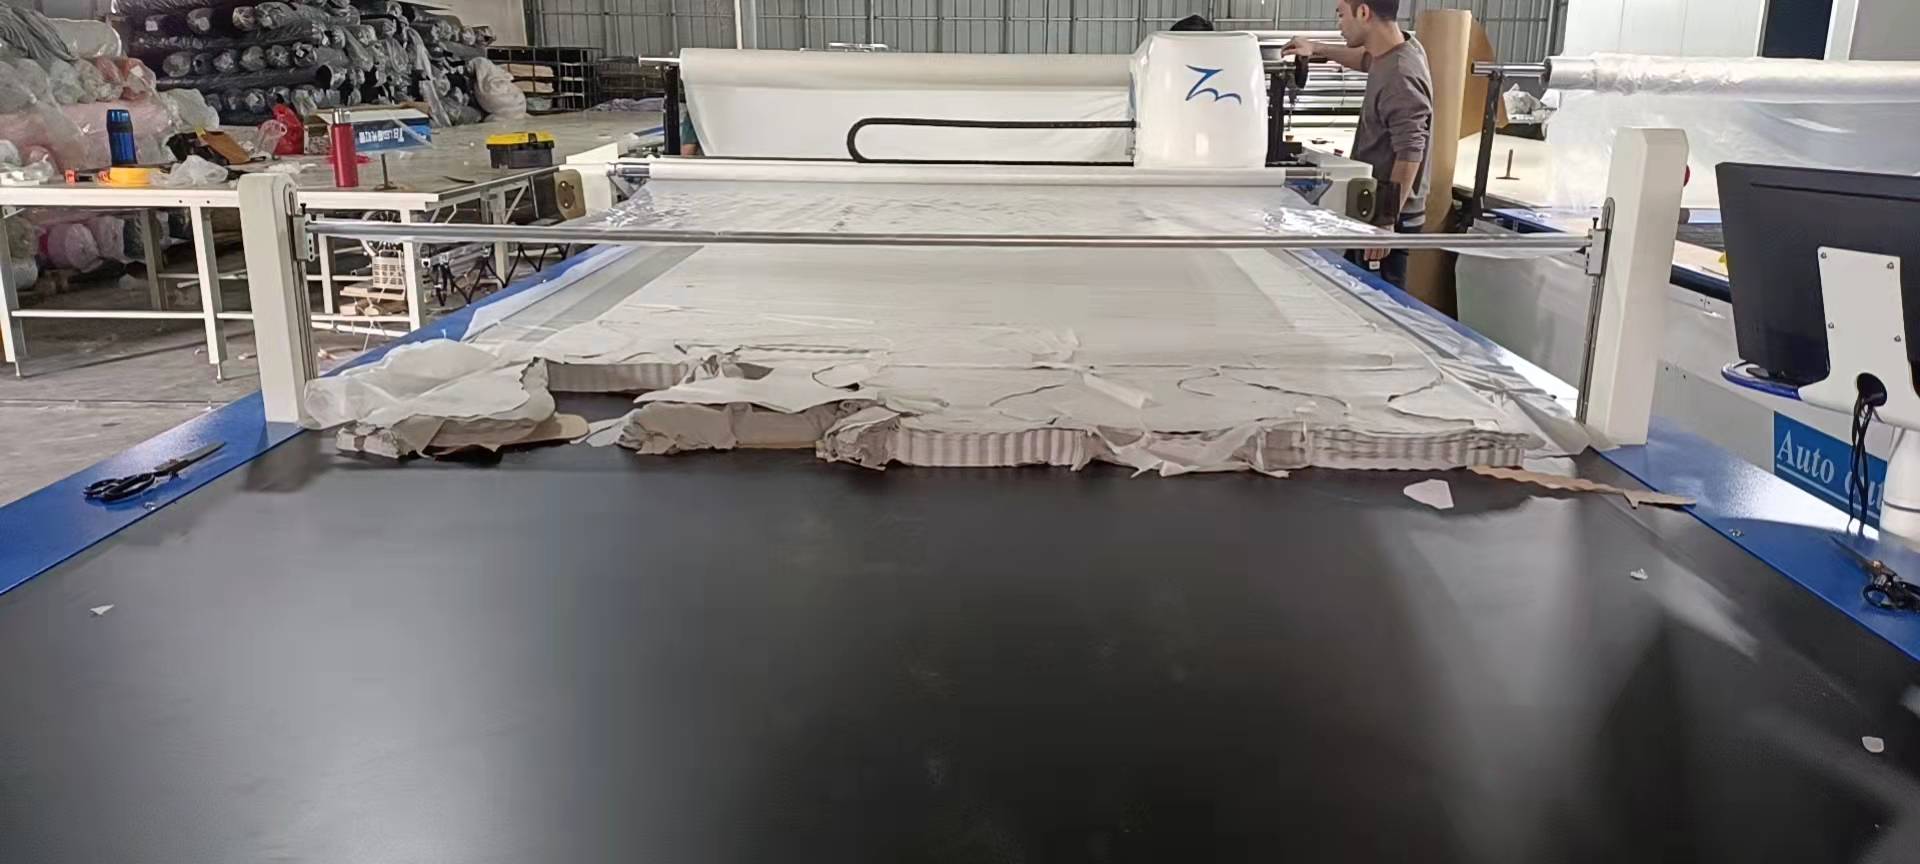 La cortadora de telas de mejor calidad